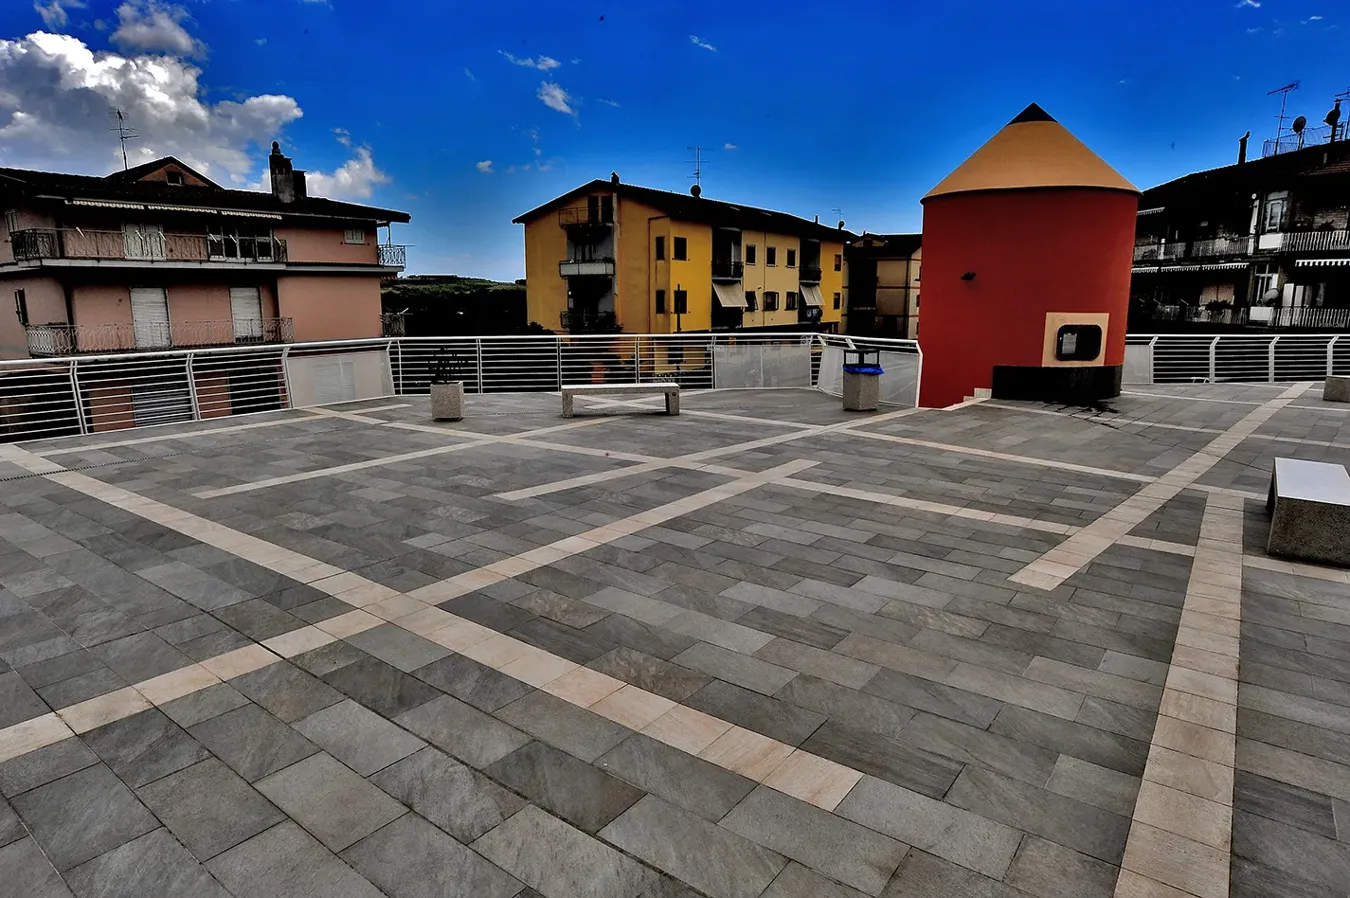 Обновленная Пьяцца Кампильяно с различными форматами плитки из коллекции Point, демонстрирующая привлекательный и современный дизайн, который улучшает окружающее городское пространство.